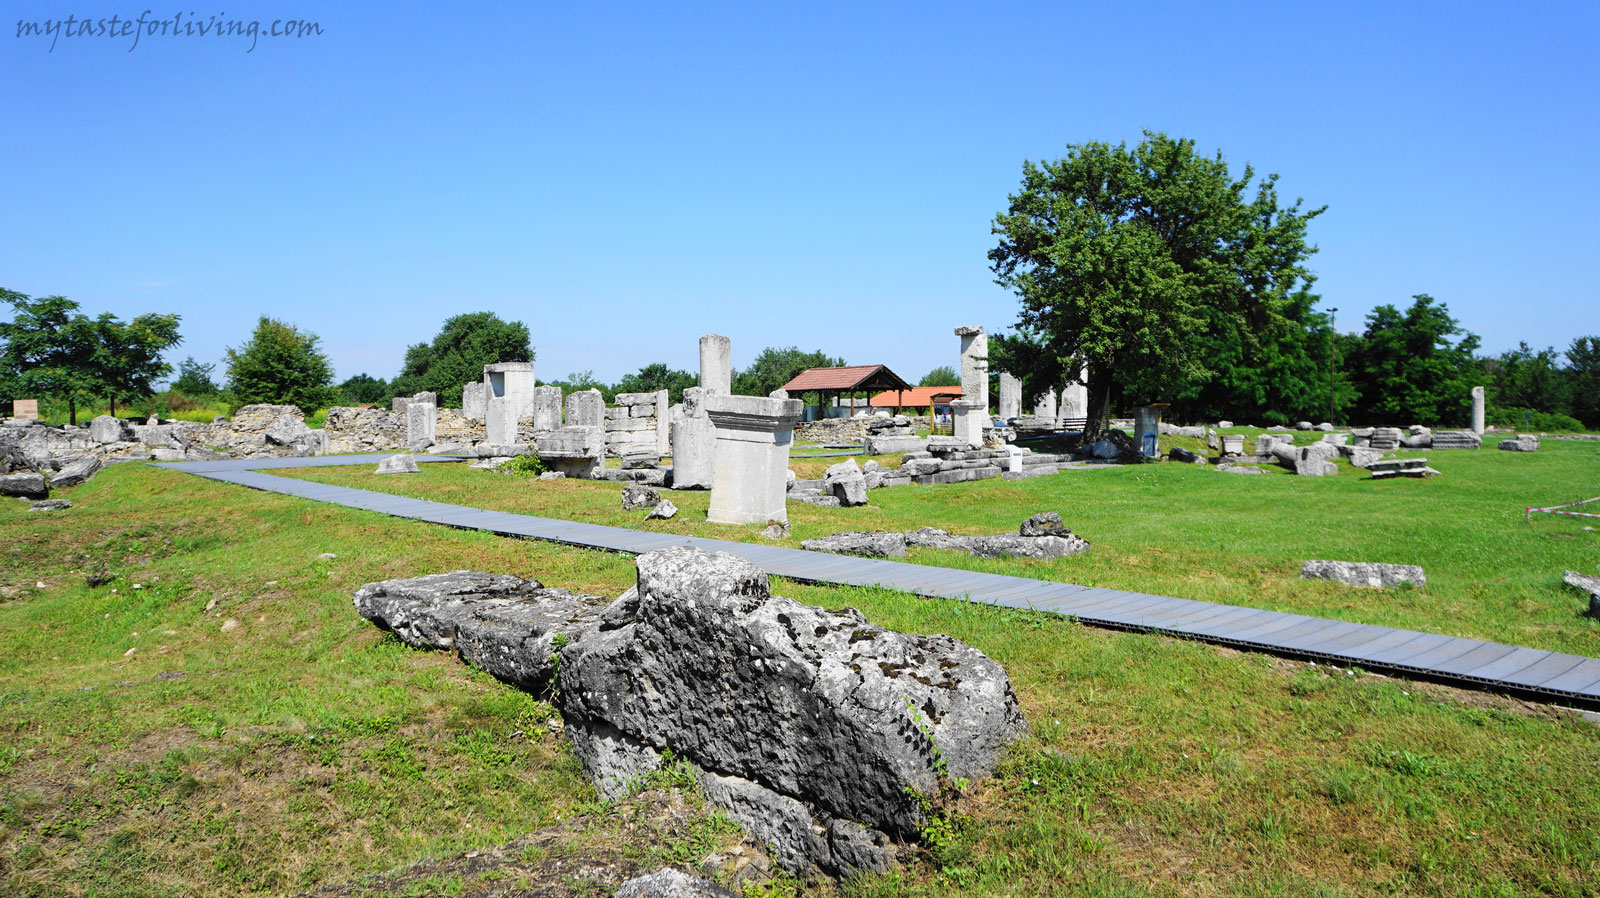 Останките от ранновизантийския град Никополис ад Иструм (в превод „Град на победата на Дунава“) се намират на около 20 км северно от град Велико Търново по пътя за Русе. 